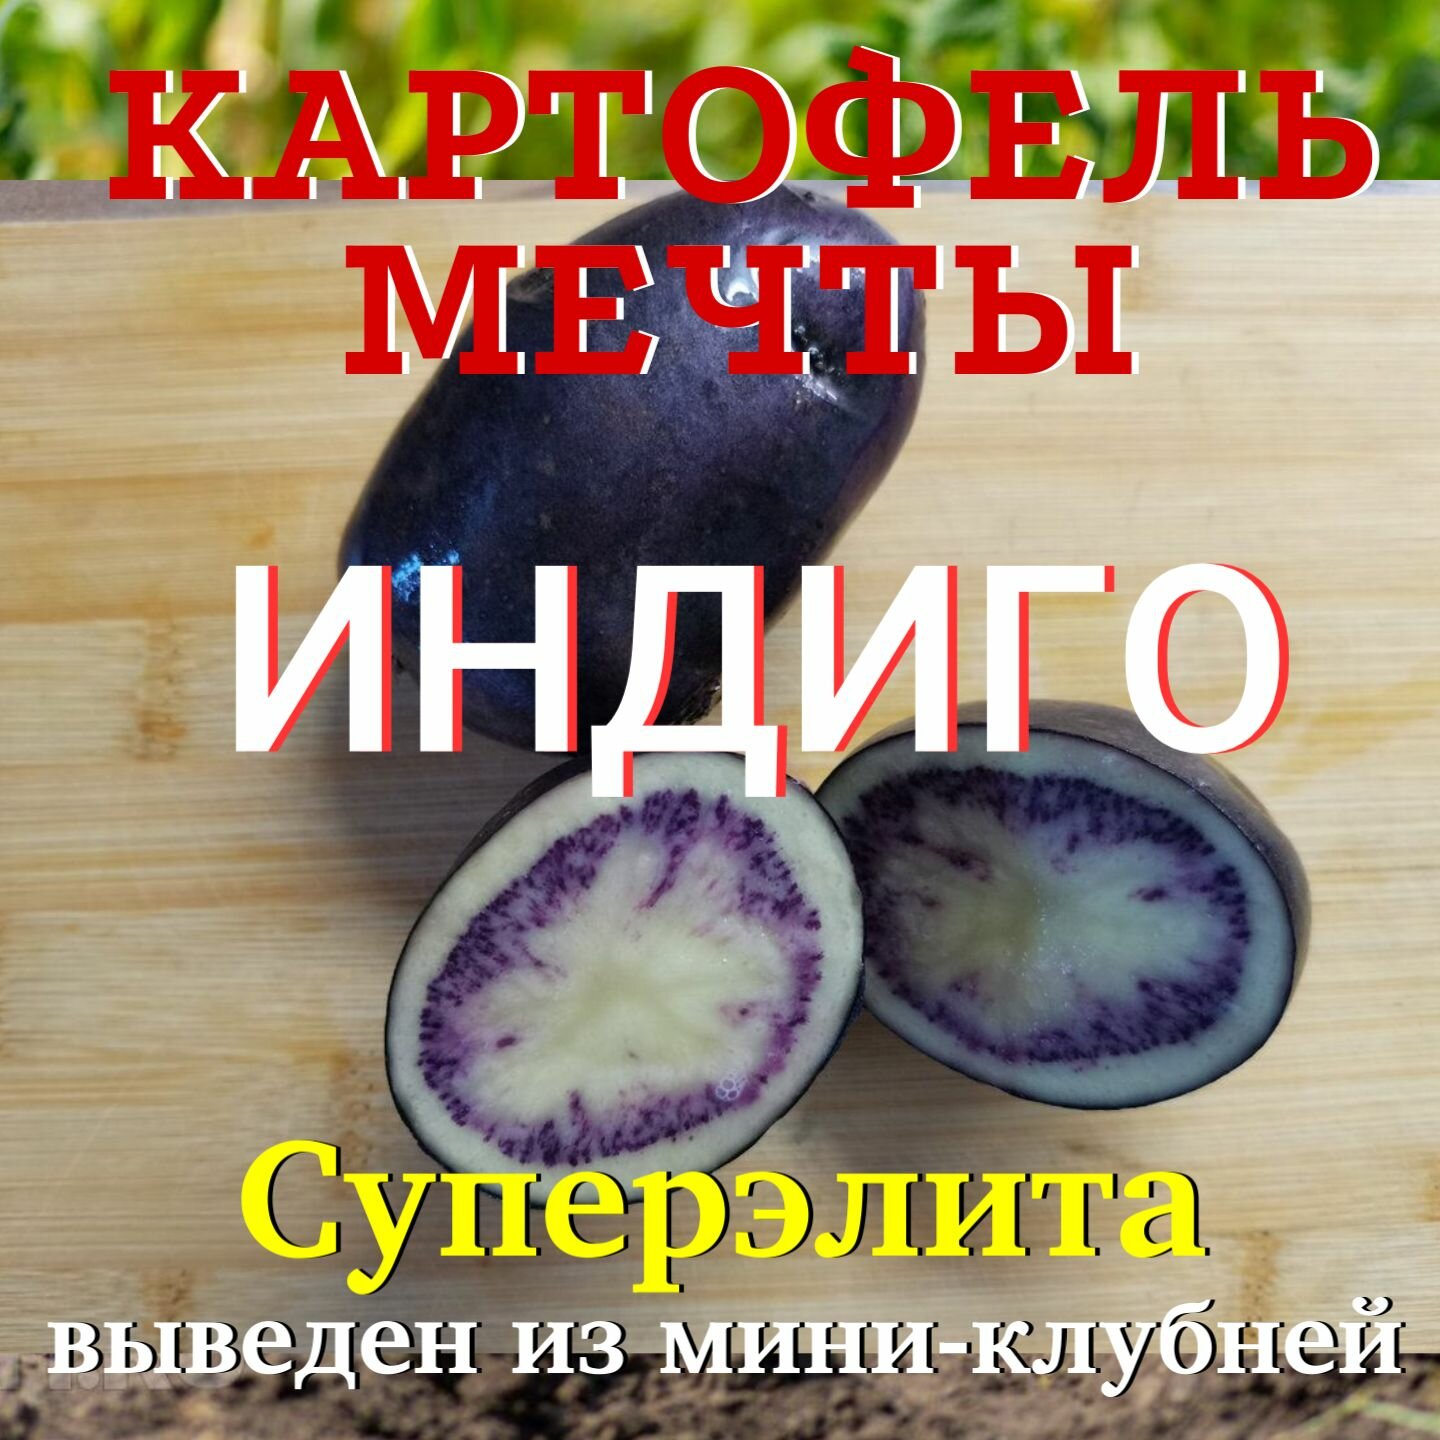 Картофель семенной индиго клубни суперэлита 3 кг